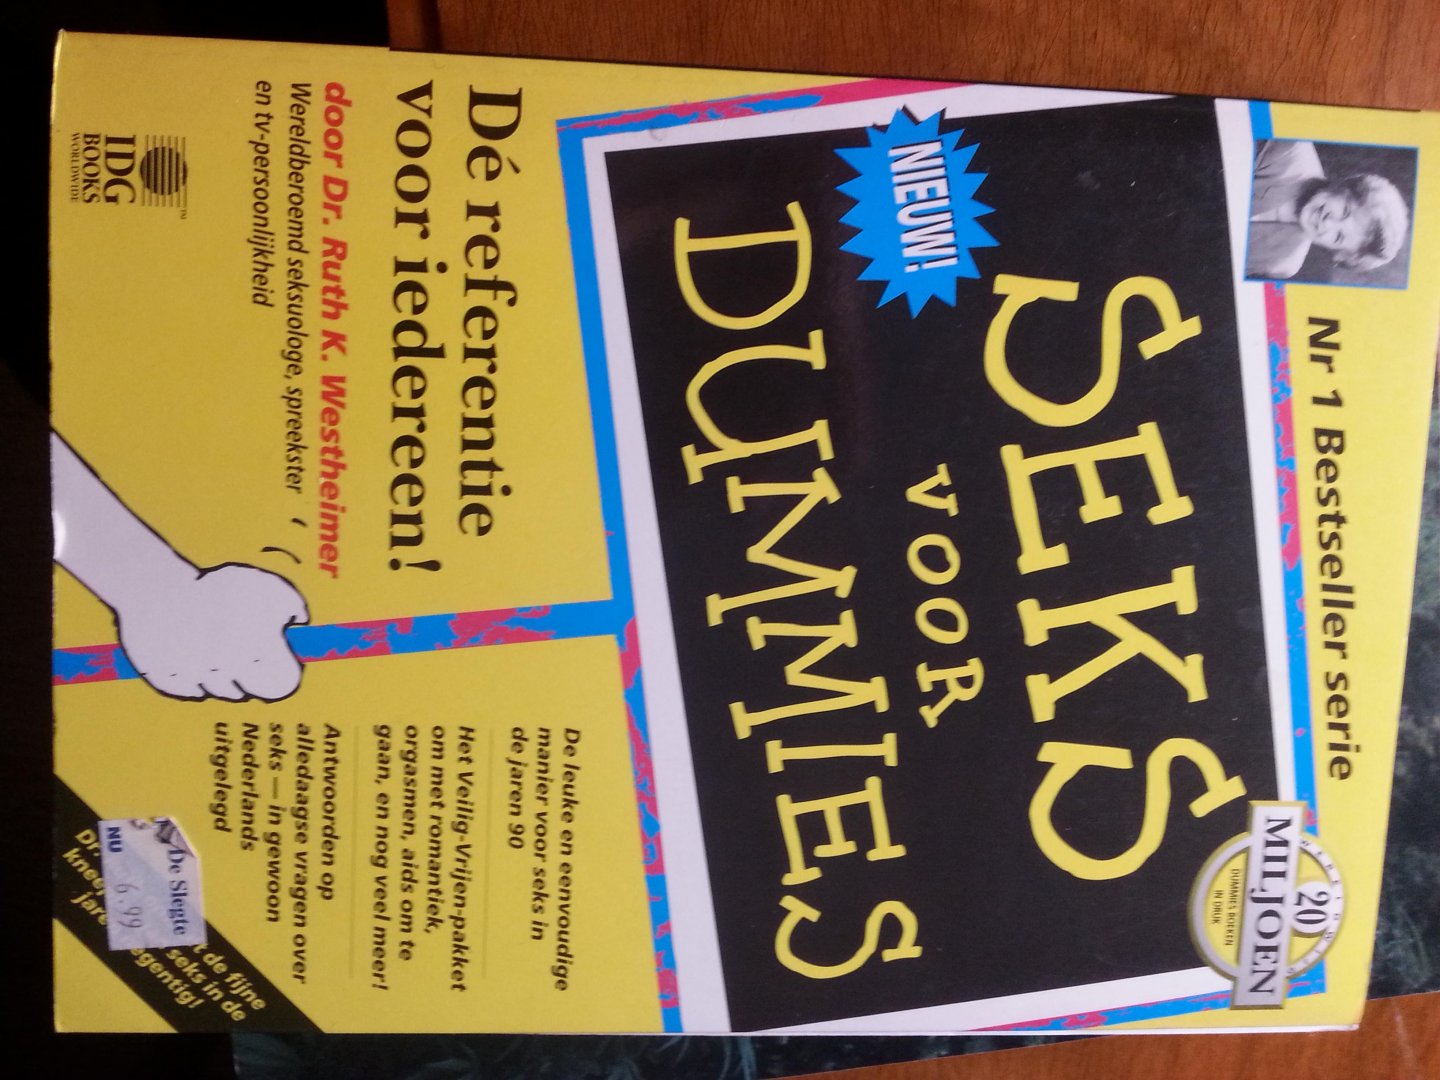 Dr. Ruth K. Westheimer - Seks voor Dummies nr. 1 bestseller